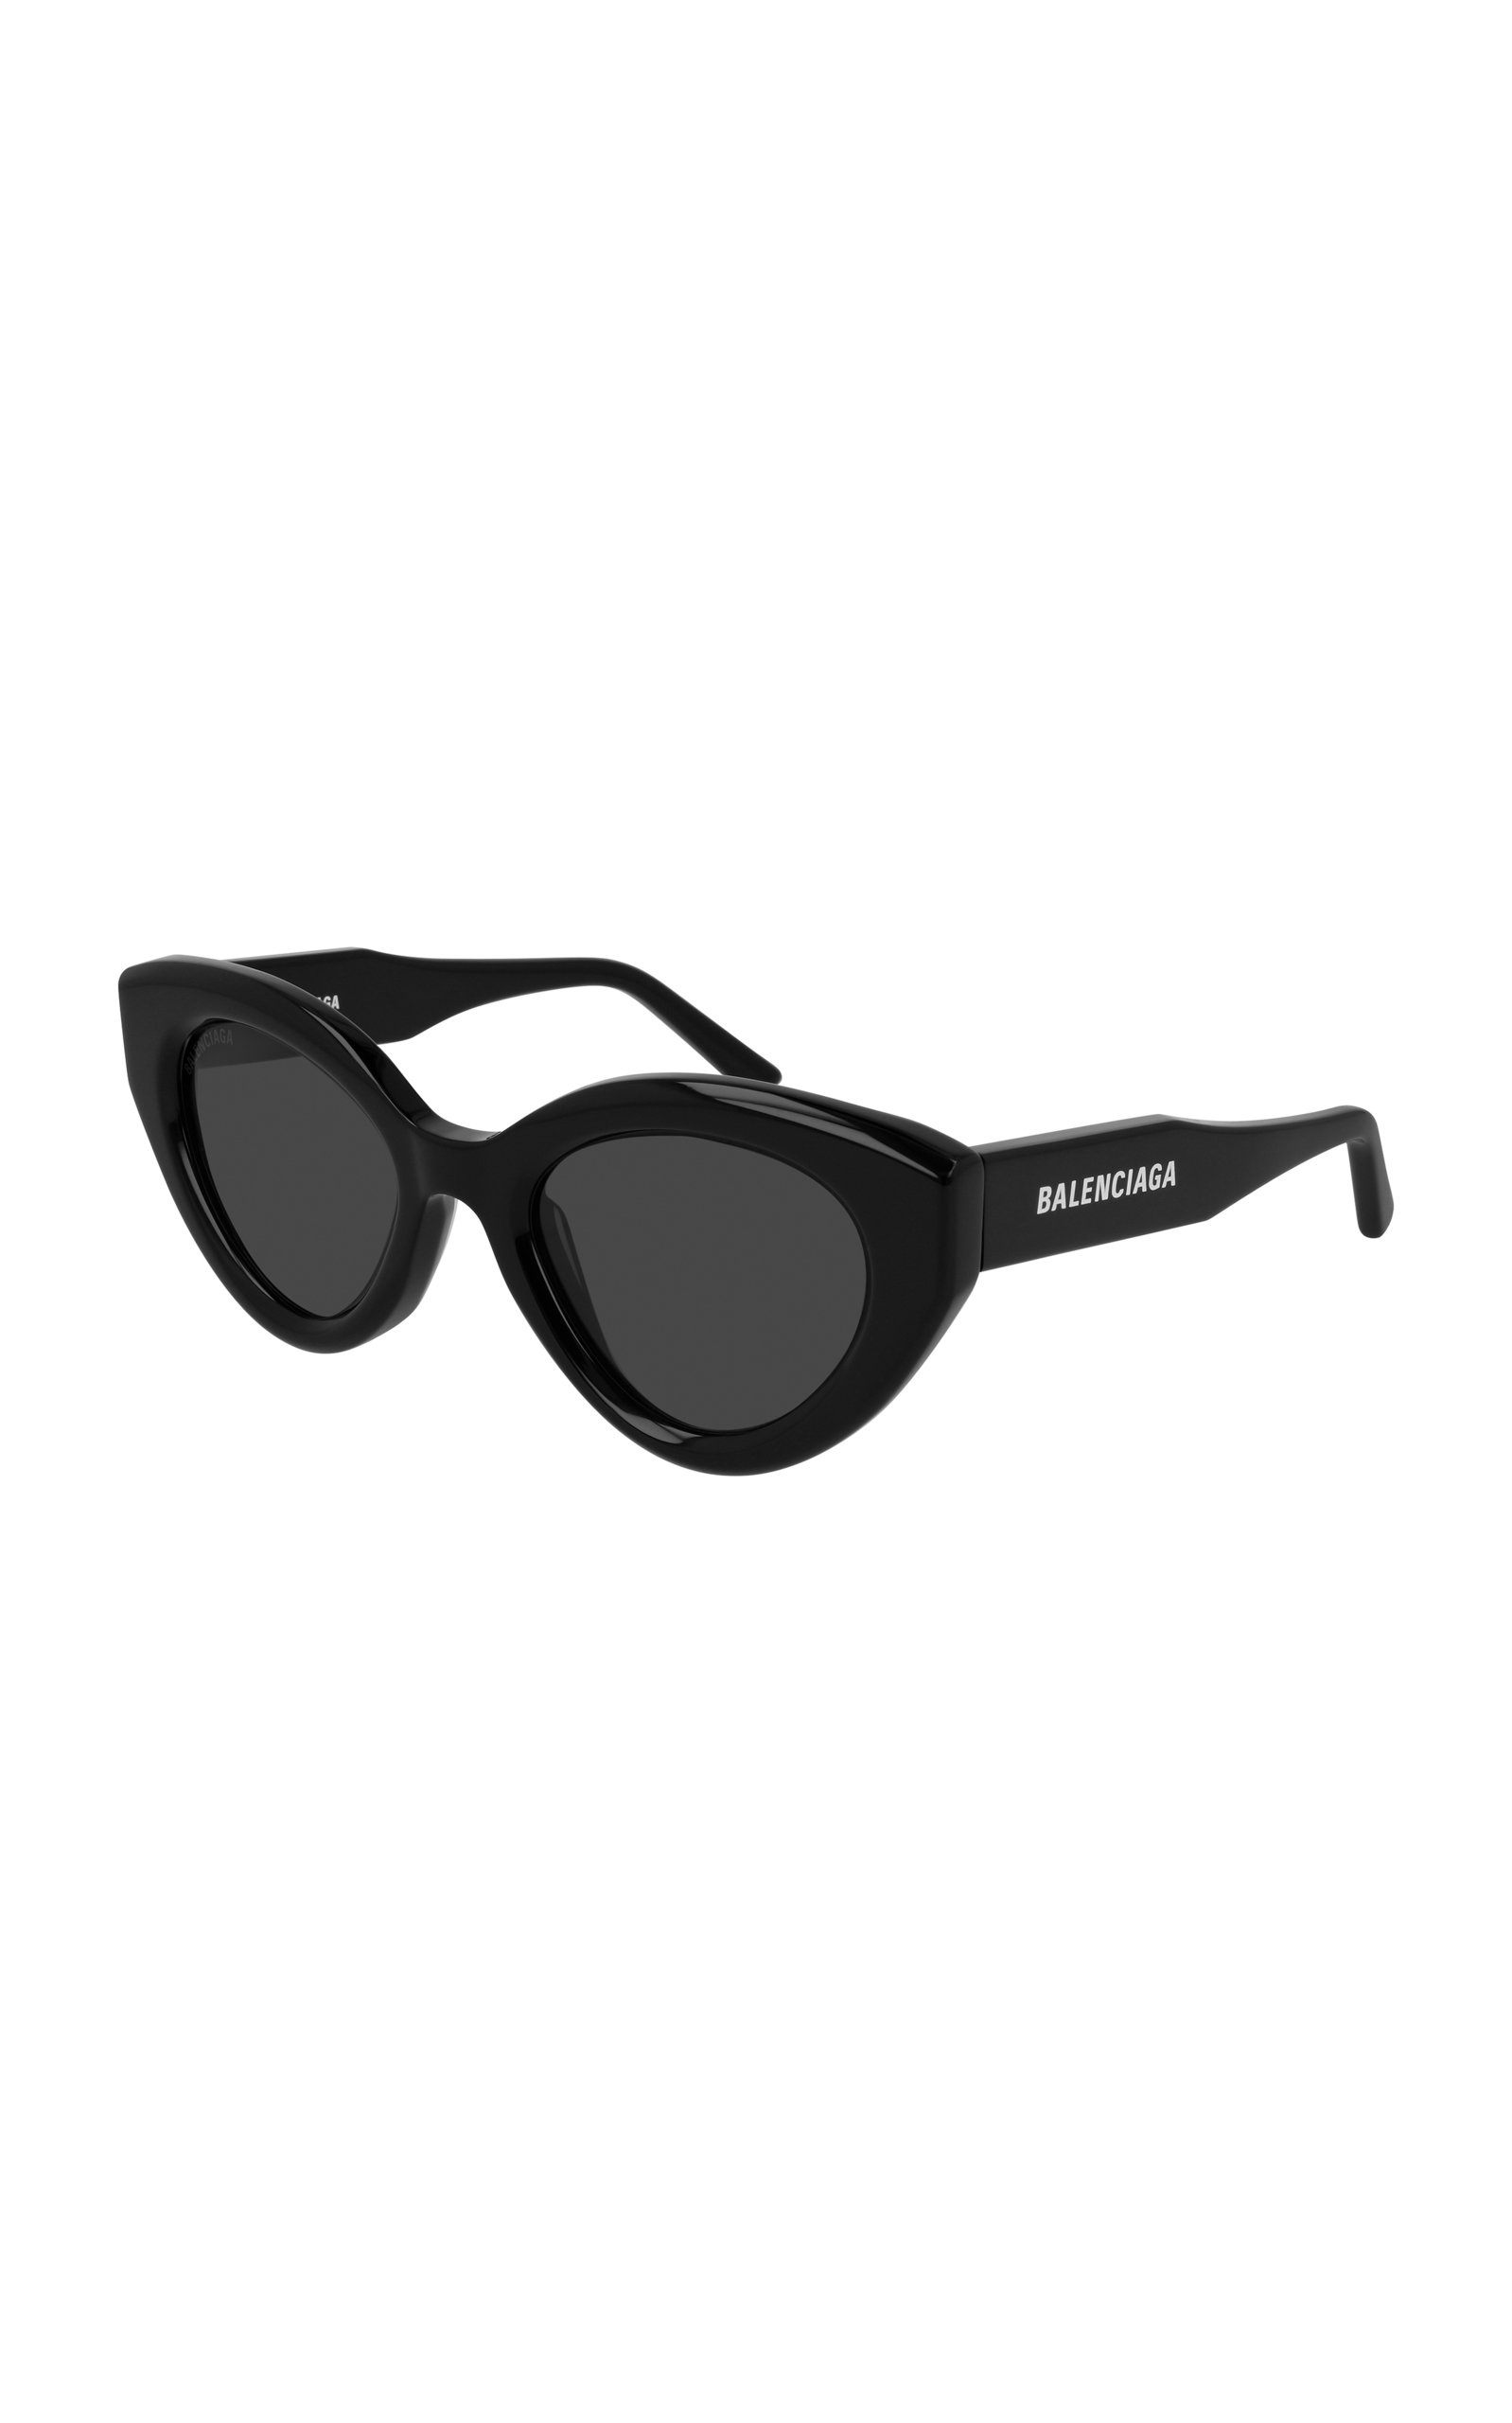 Balenciaga - Women's Agent Cat-Eye Acetate Sunglasses - Black - Moda Operandi